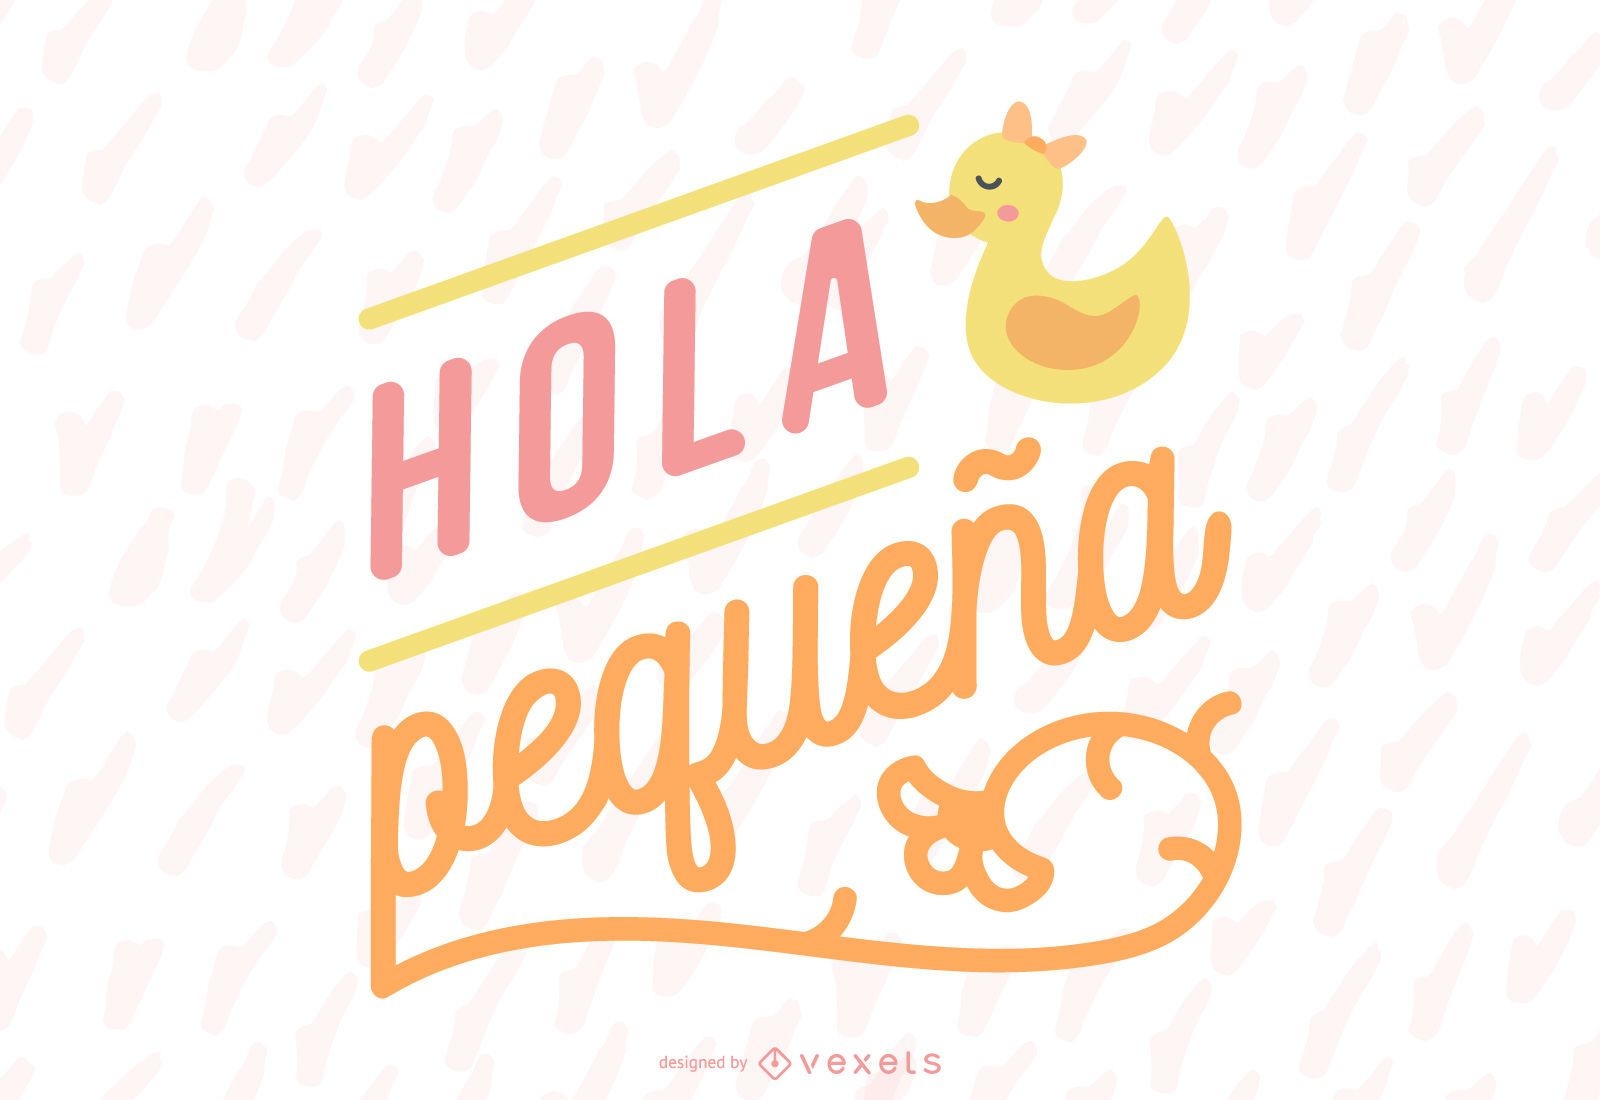 Novo banner com letras em espanhol para beb?s